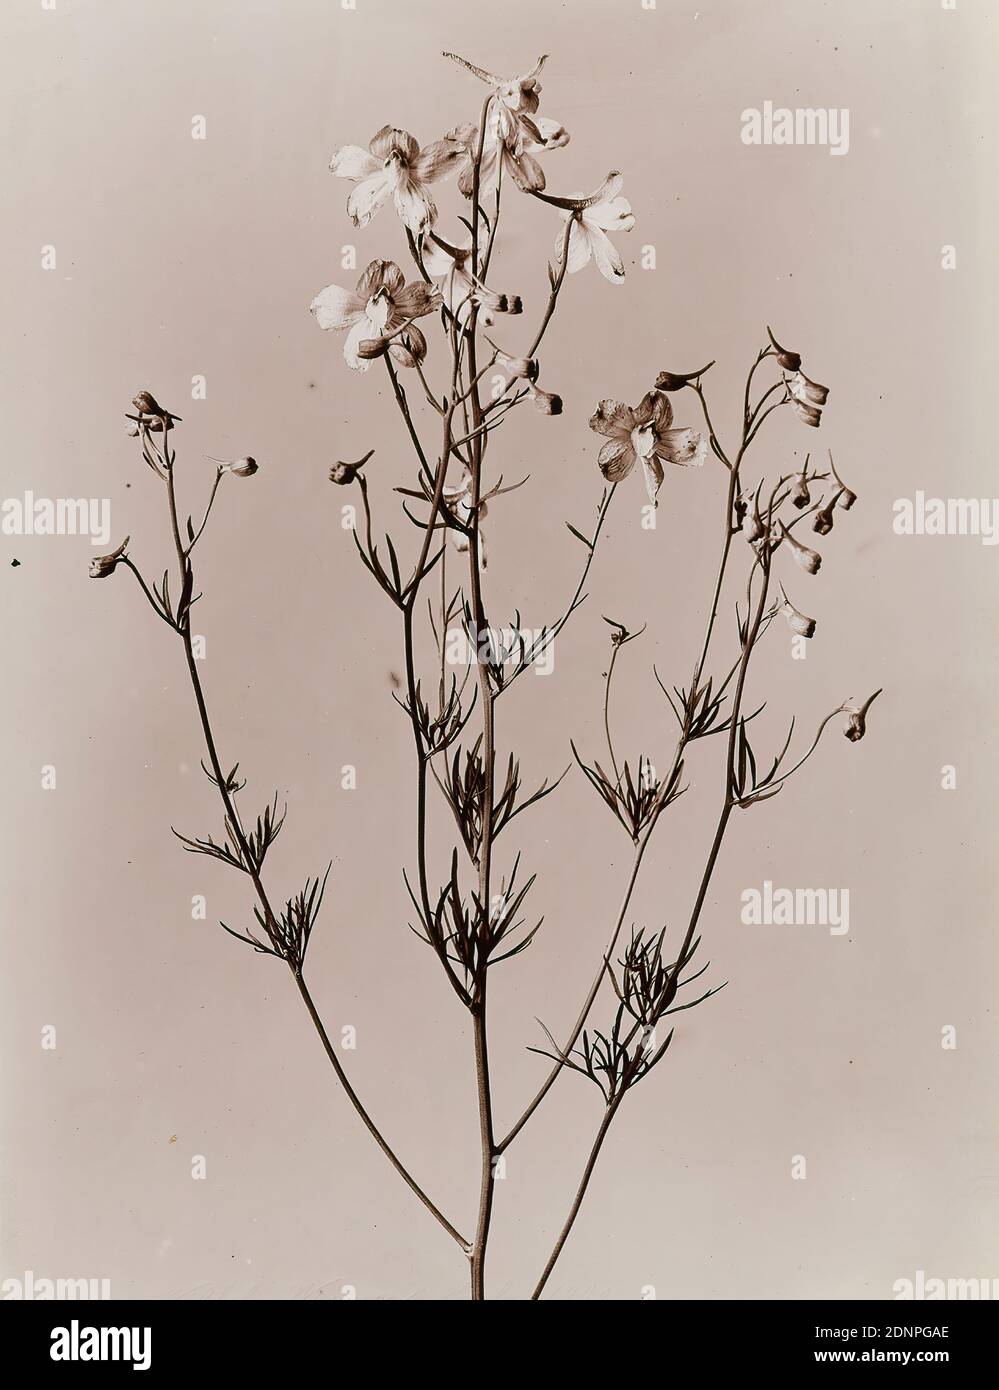 Wilhelm Weimar, étude de plantes, papier collodion, procédé positif noir et blanc, taille de l'image: Hauteur: 23,30 cm; largeur: 17,20 cm, numéroté: Verso: 541, photographie, fleurs Banque D'Images